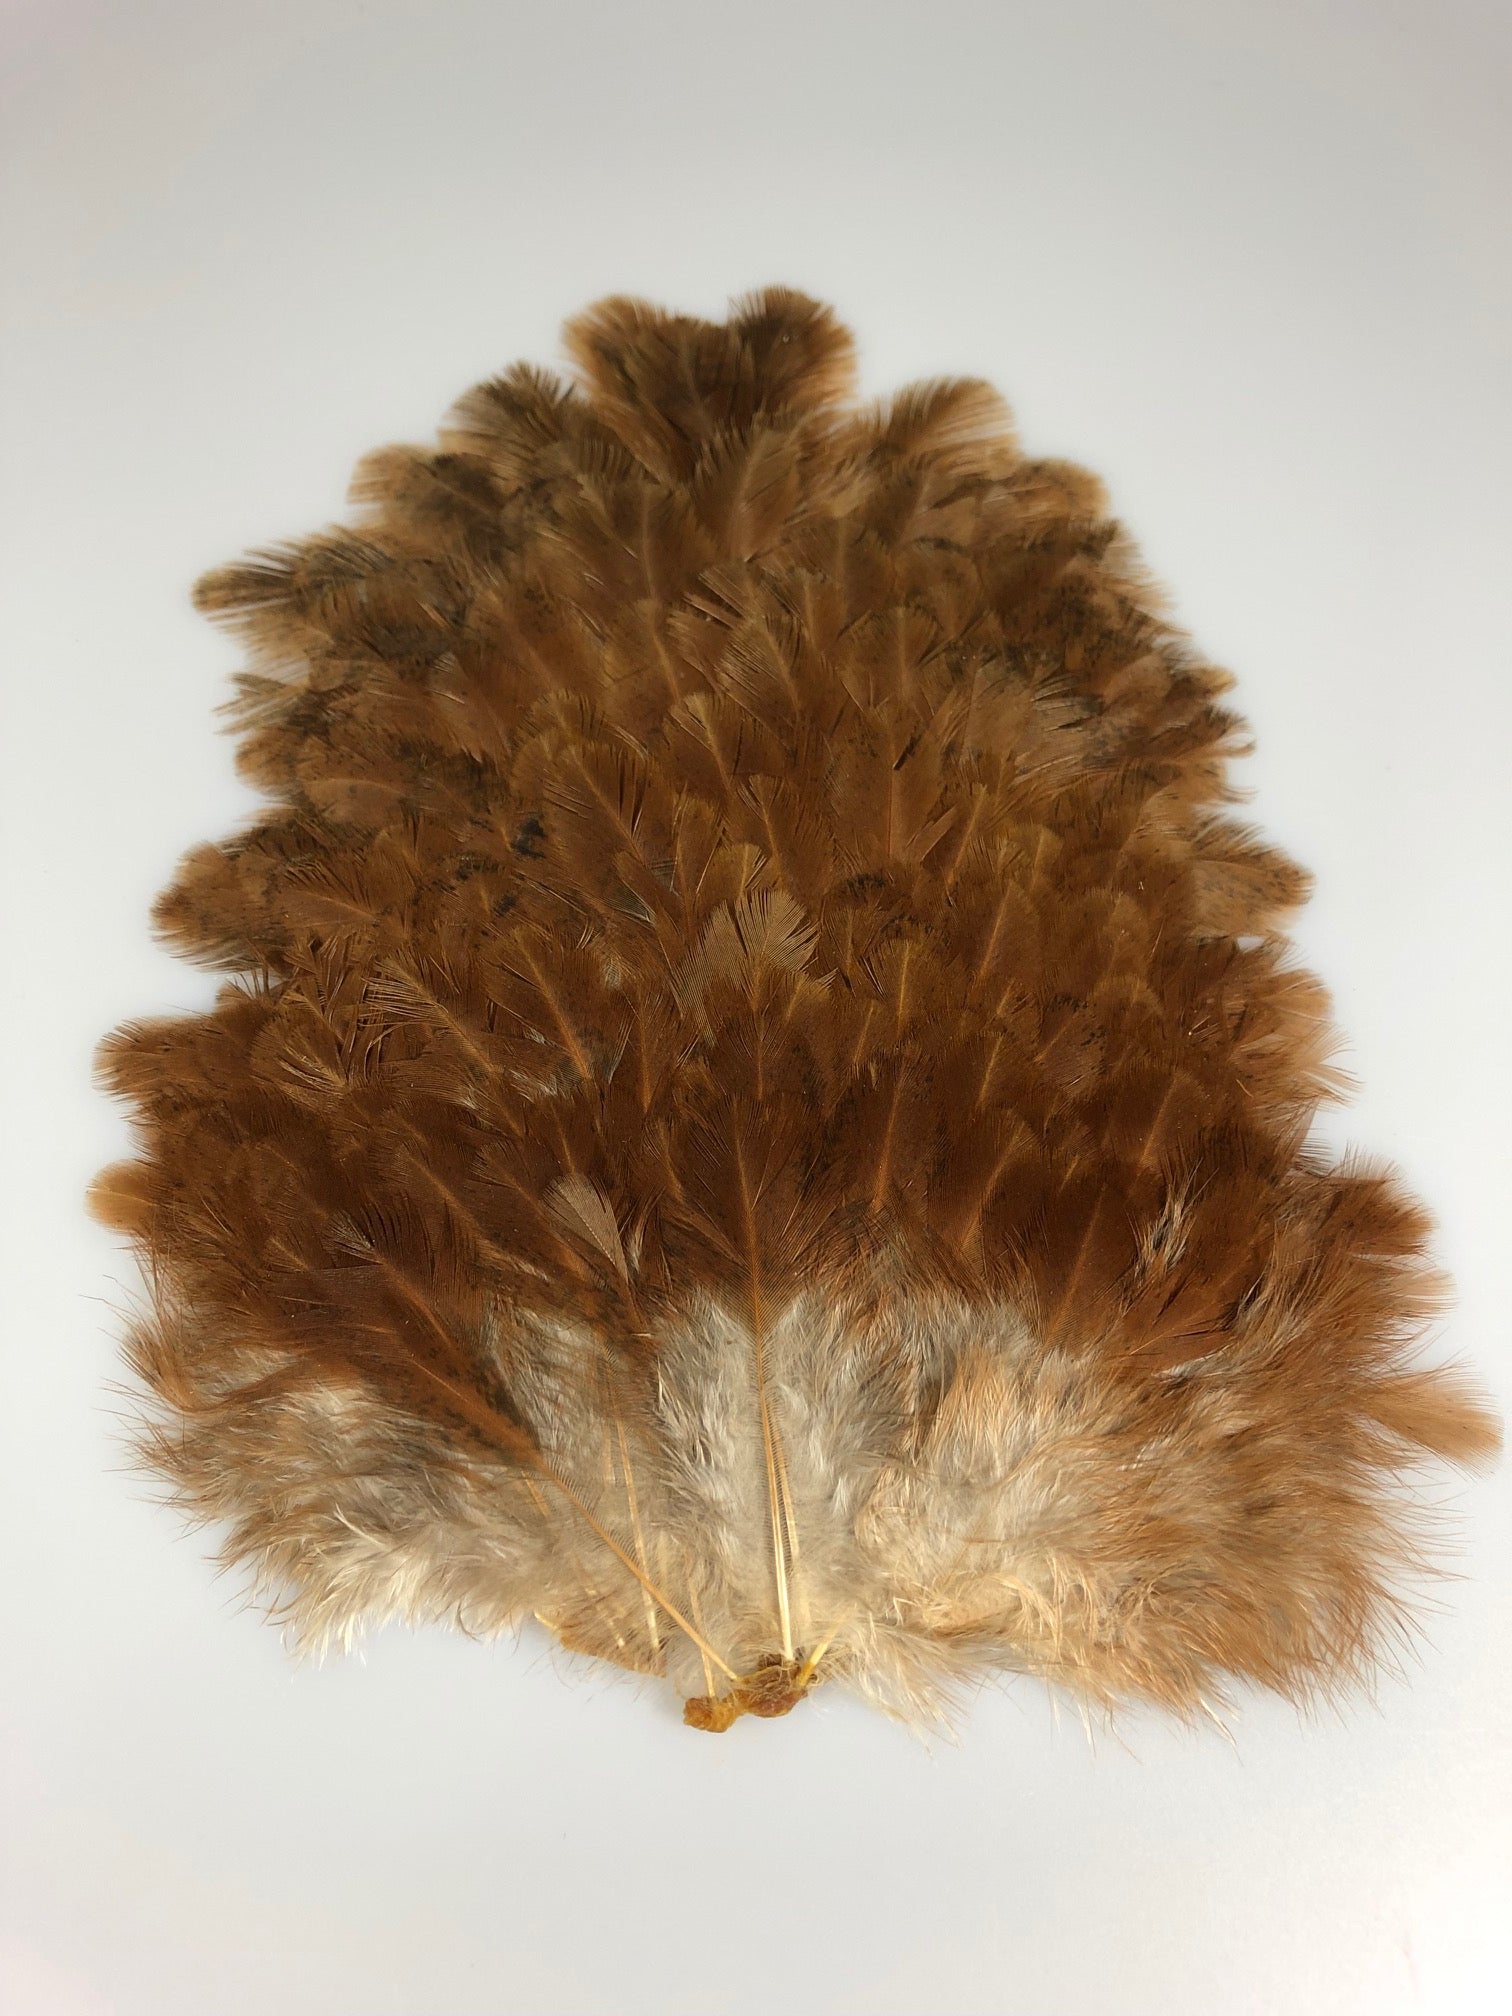 Hareline - Cinnamon Tip Turkey Tail Feathers